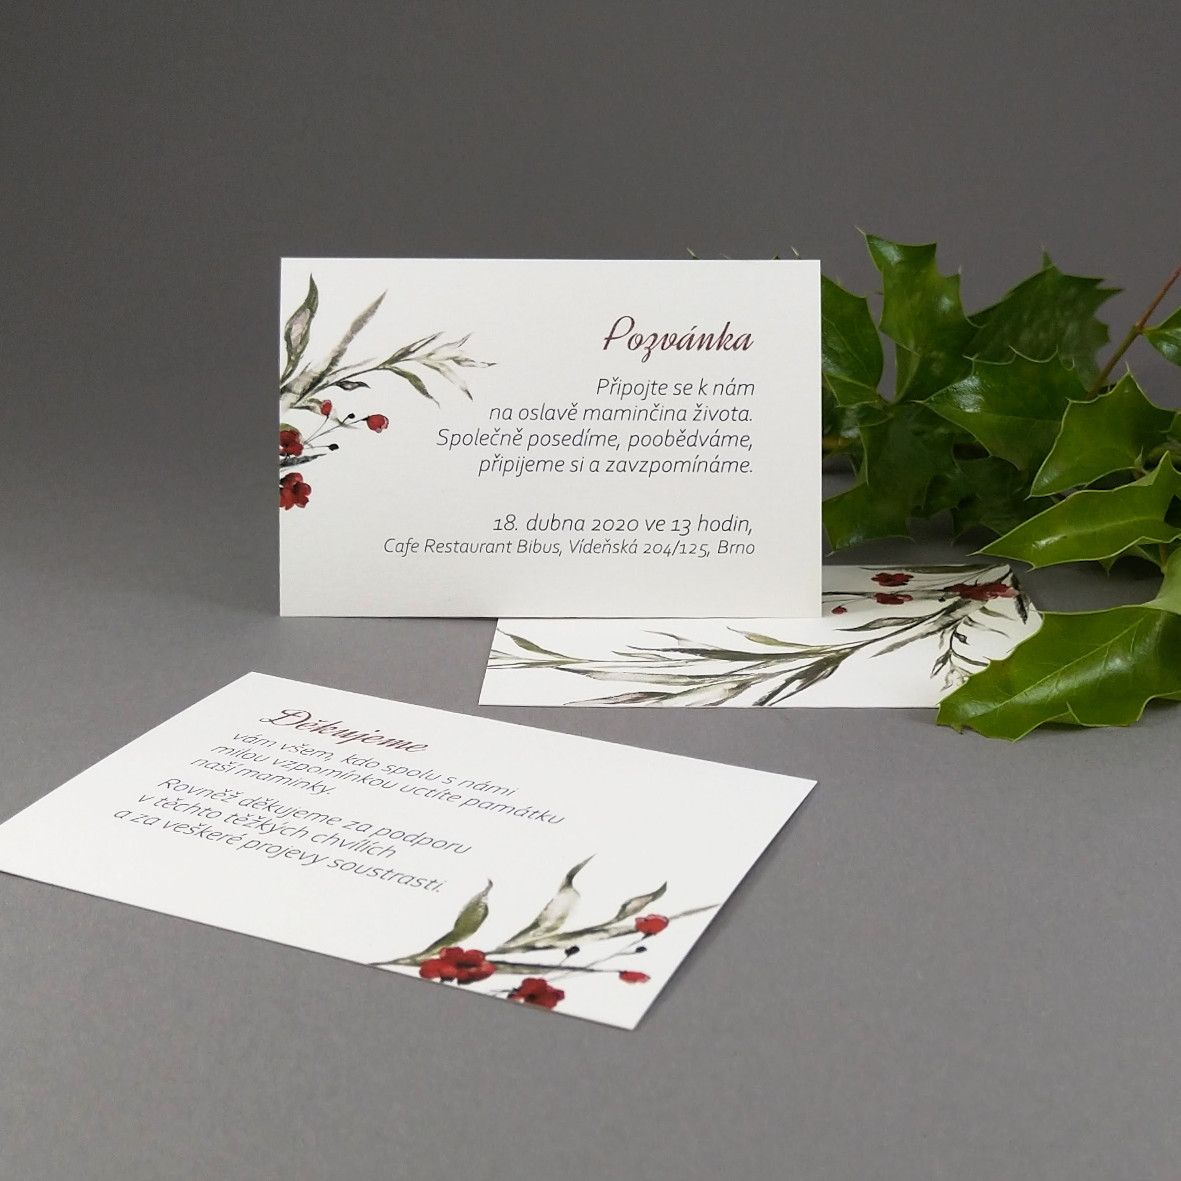 Pozvánka, informační karta – s motivem ratolesti a drobných červených květů, formát 100 × 70 mm, oboustranná